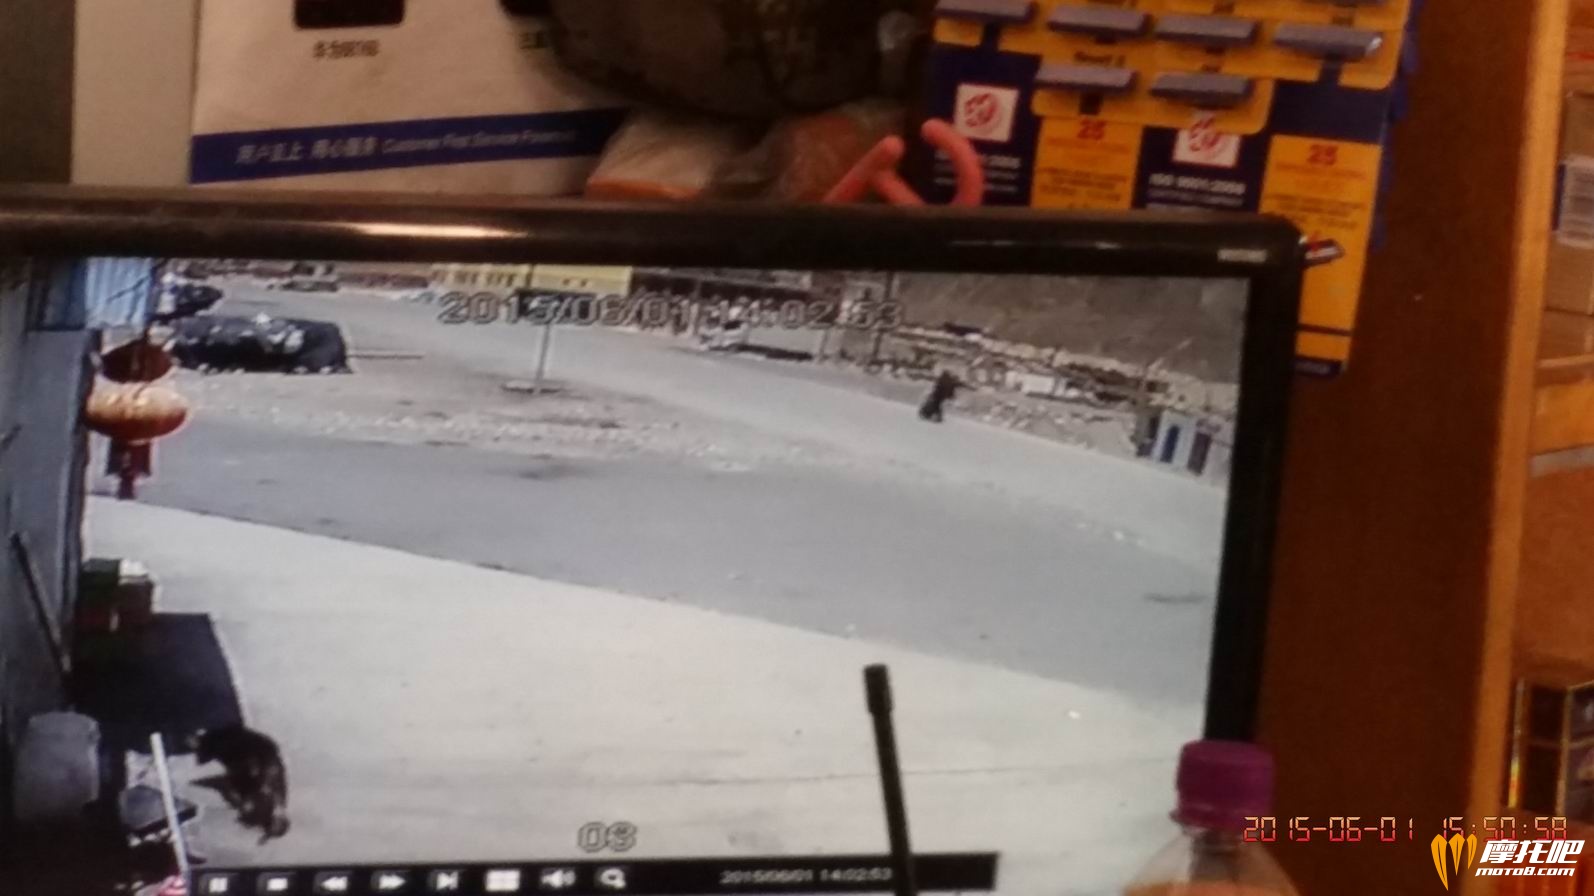 桥头堡超市的录像显示该名男子正拎着我的包与我同方向行走